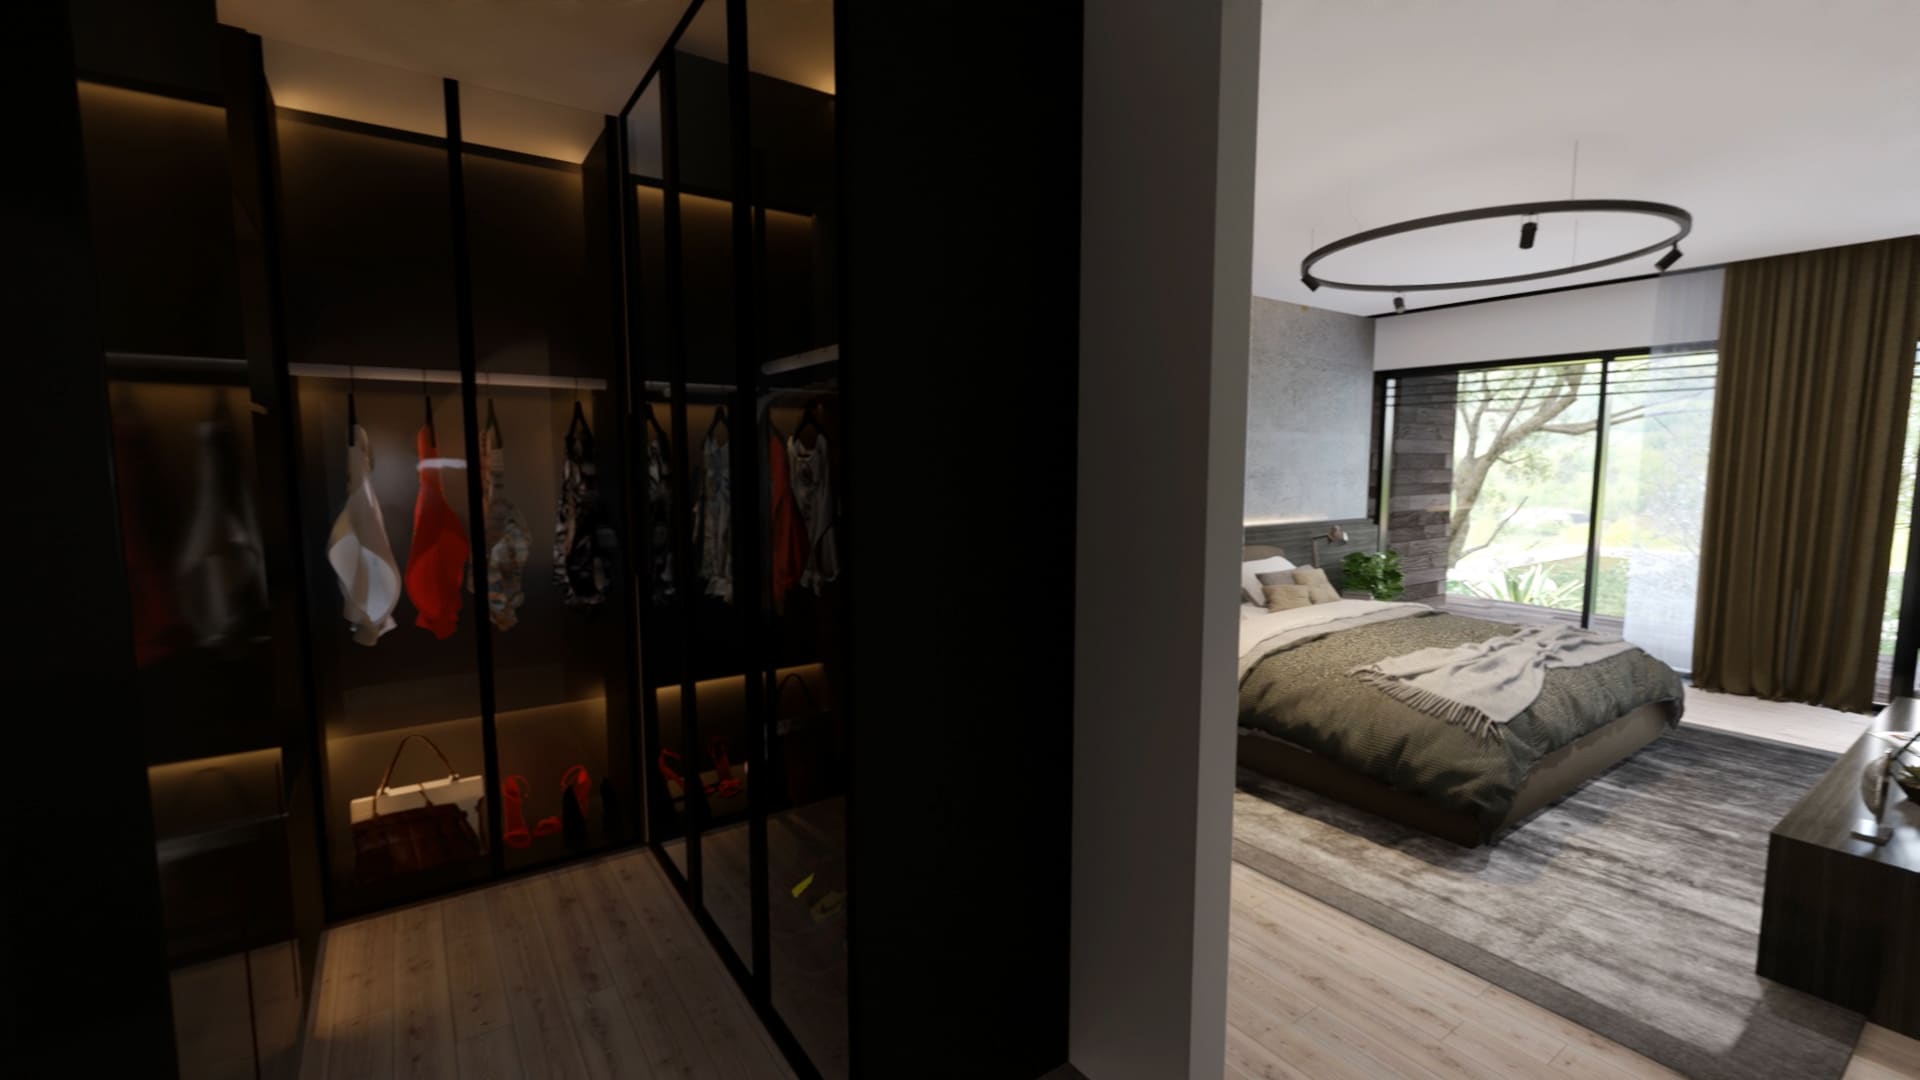 Walk-in closet im Schlafzimmer, begehbarer Kleiderschrank, Luxusimmobilie